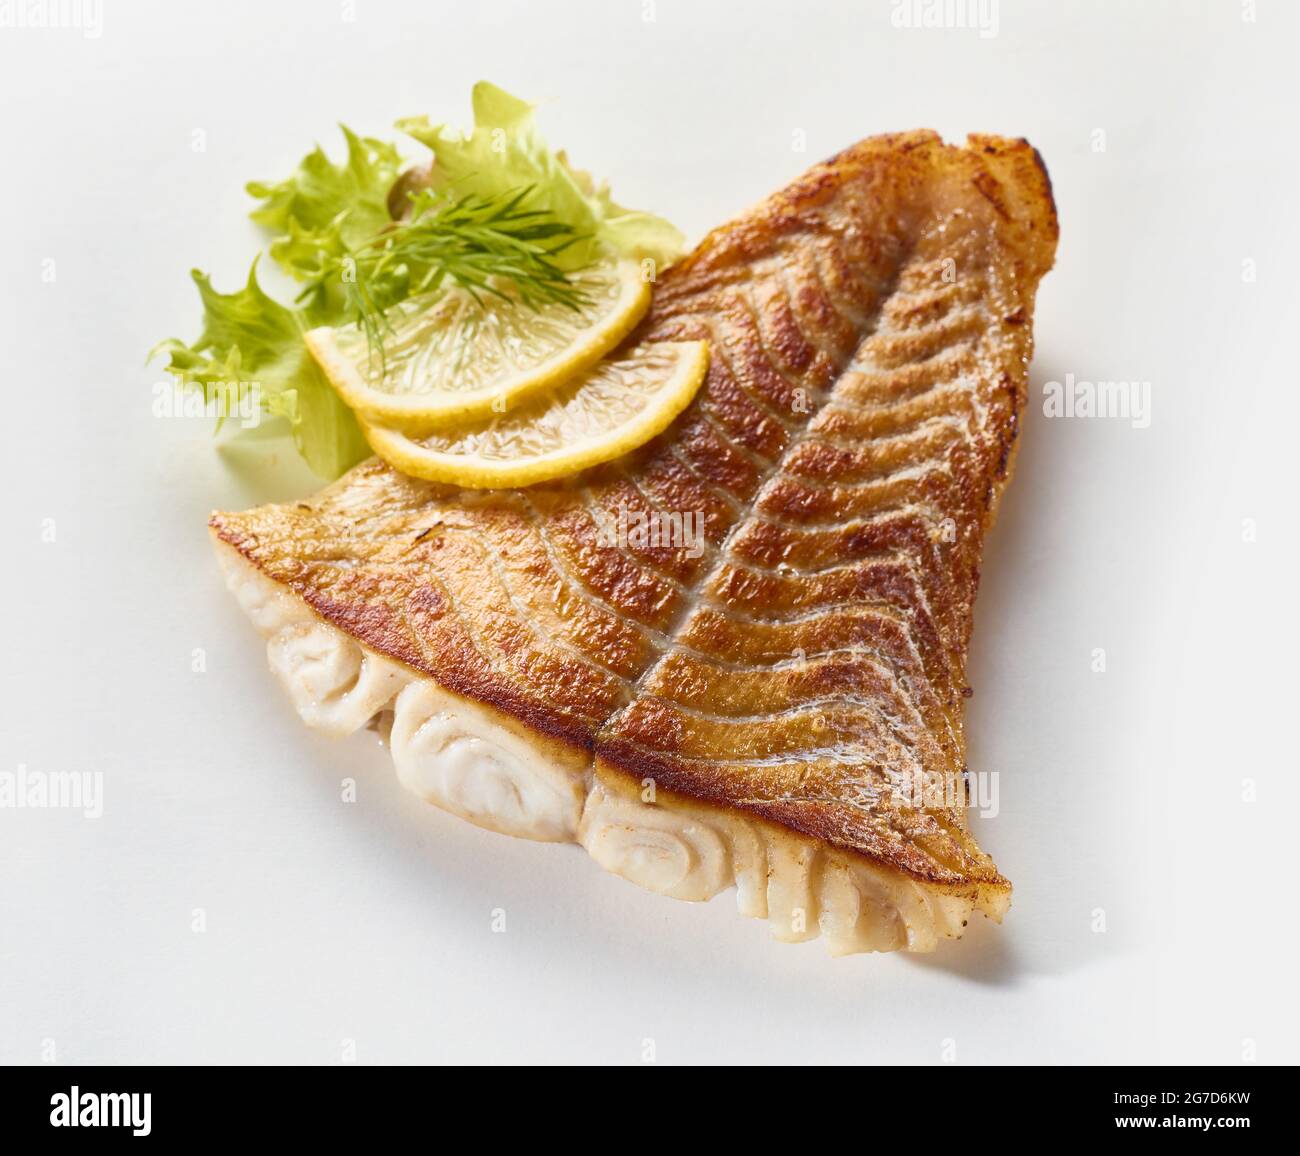 Von oben appetitlich gerösteter Pollack-Fisch auf weißer Oberfläche mit reifen Zitronenscheiben angeordnet Stockfoto